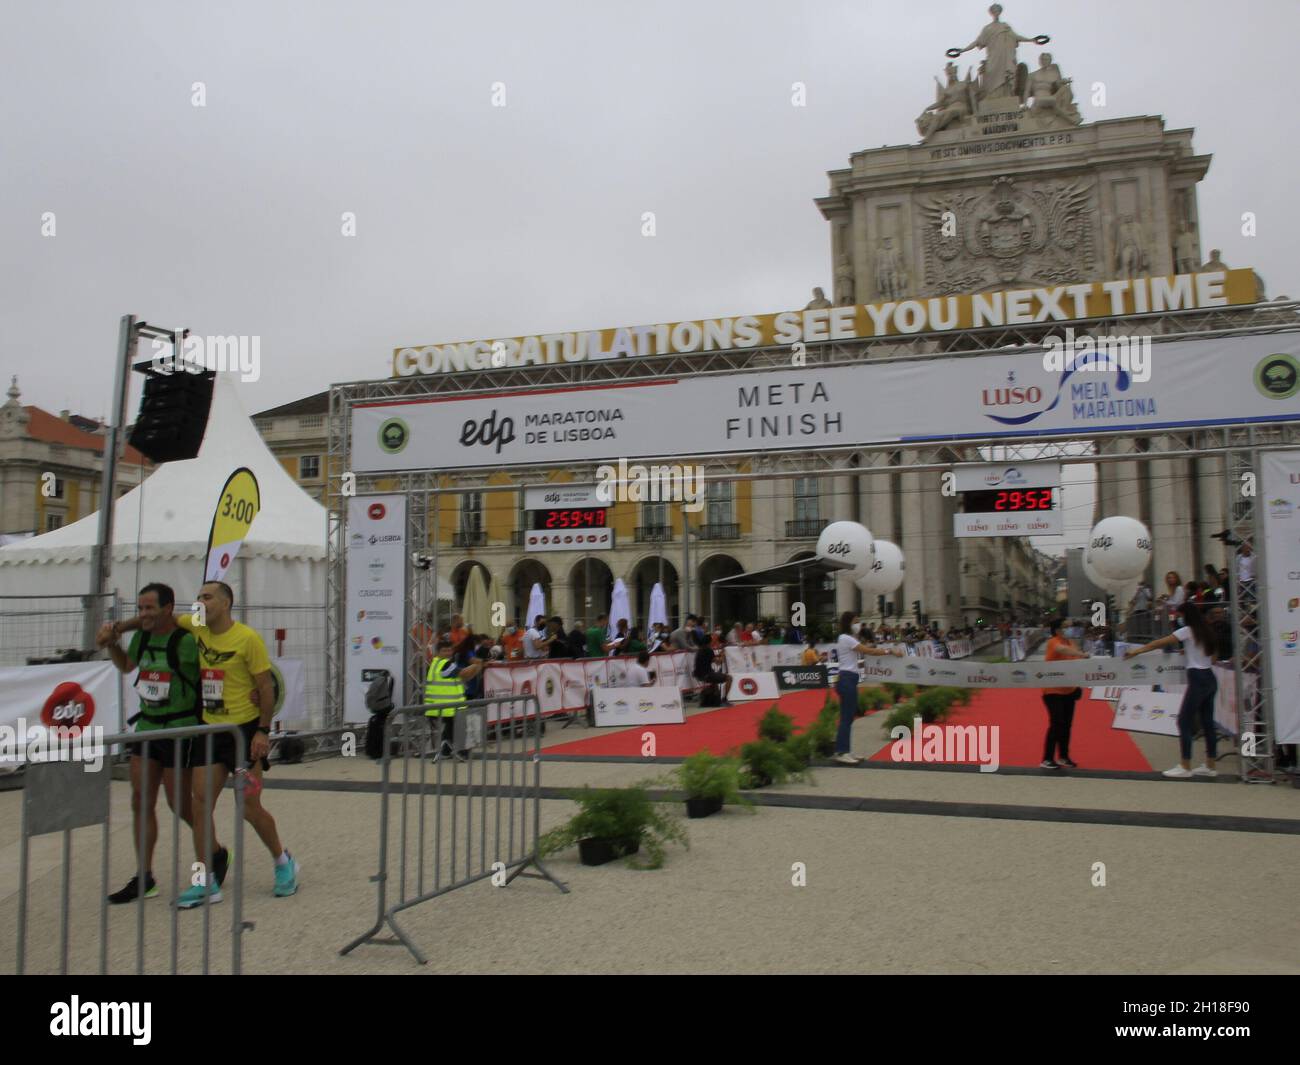 17 ottobre 2021, Lisboa, Portogallo, USA: EDP maratona di Lisbona. 17 ottobre 2021, Lisbona, Portogallo: L'etiope Andualem Shiferaw ha vinto la maratona EDP di Lisbona domenica (27), ripetendo il trionfo raggiunto nel 2019 e rompendo ancora una volta il record di gara, ora con il tempo e 2:05.52 ore. In una gara che non si è svolta nel 2020 a causa della pandemia del covid-19, Shiferaw ha vinto ancora una volta la gara di Lisbona, avendo coperto 42.195 chilometri al di sotto delle 2:06.00 ore stabilite due anni fa, quando ha anche rotto il record. Il keniano Osea Kiplimo finì secondo con 2:07.39 ore, mentre l'etiope Adane Amsalu lo era Foto Stock